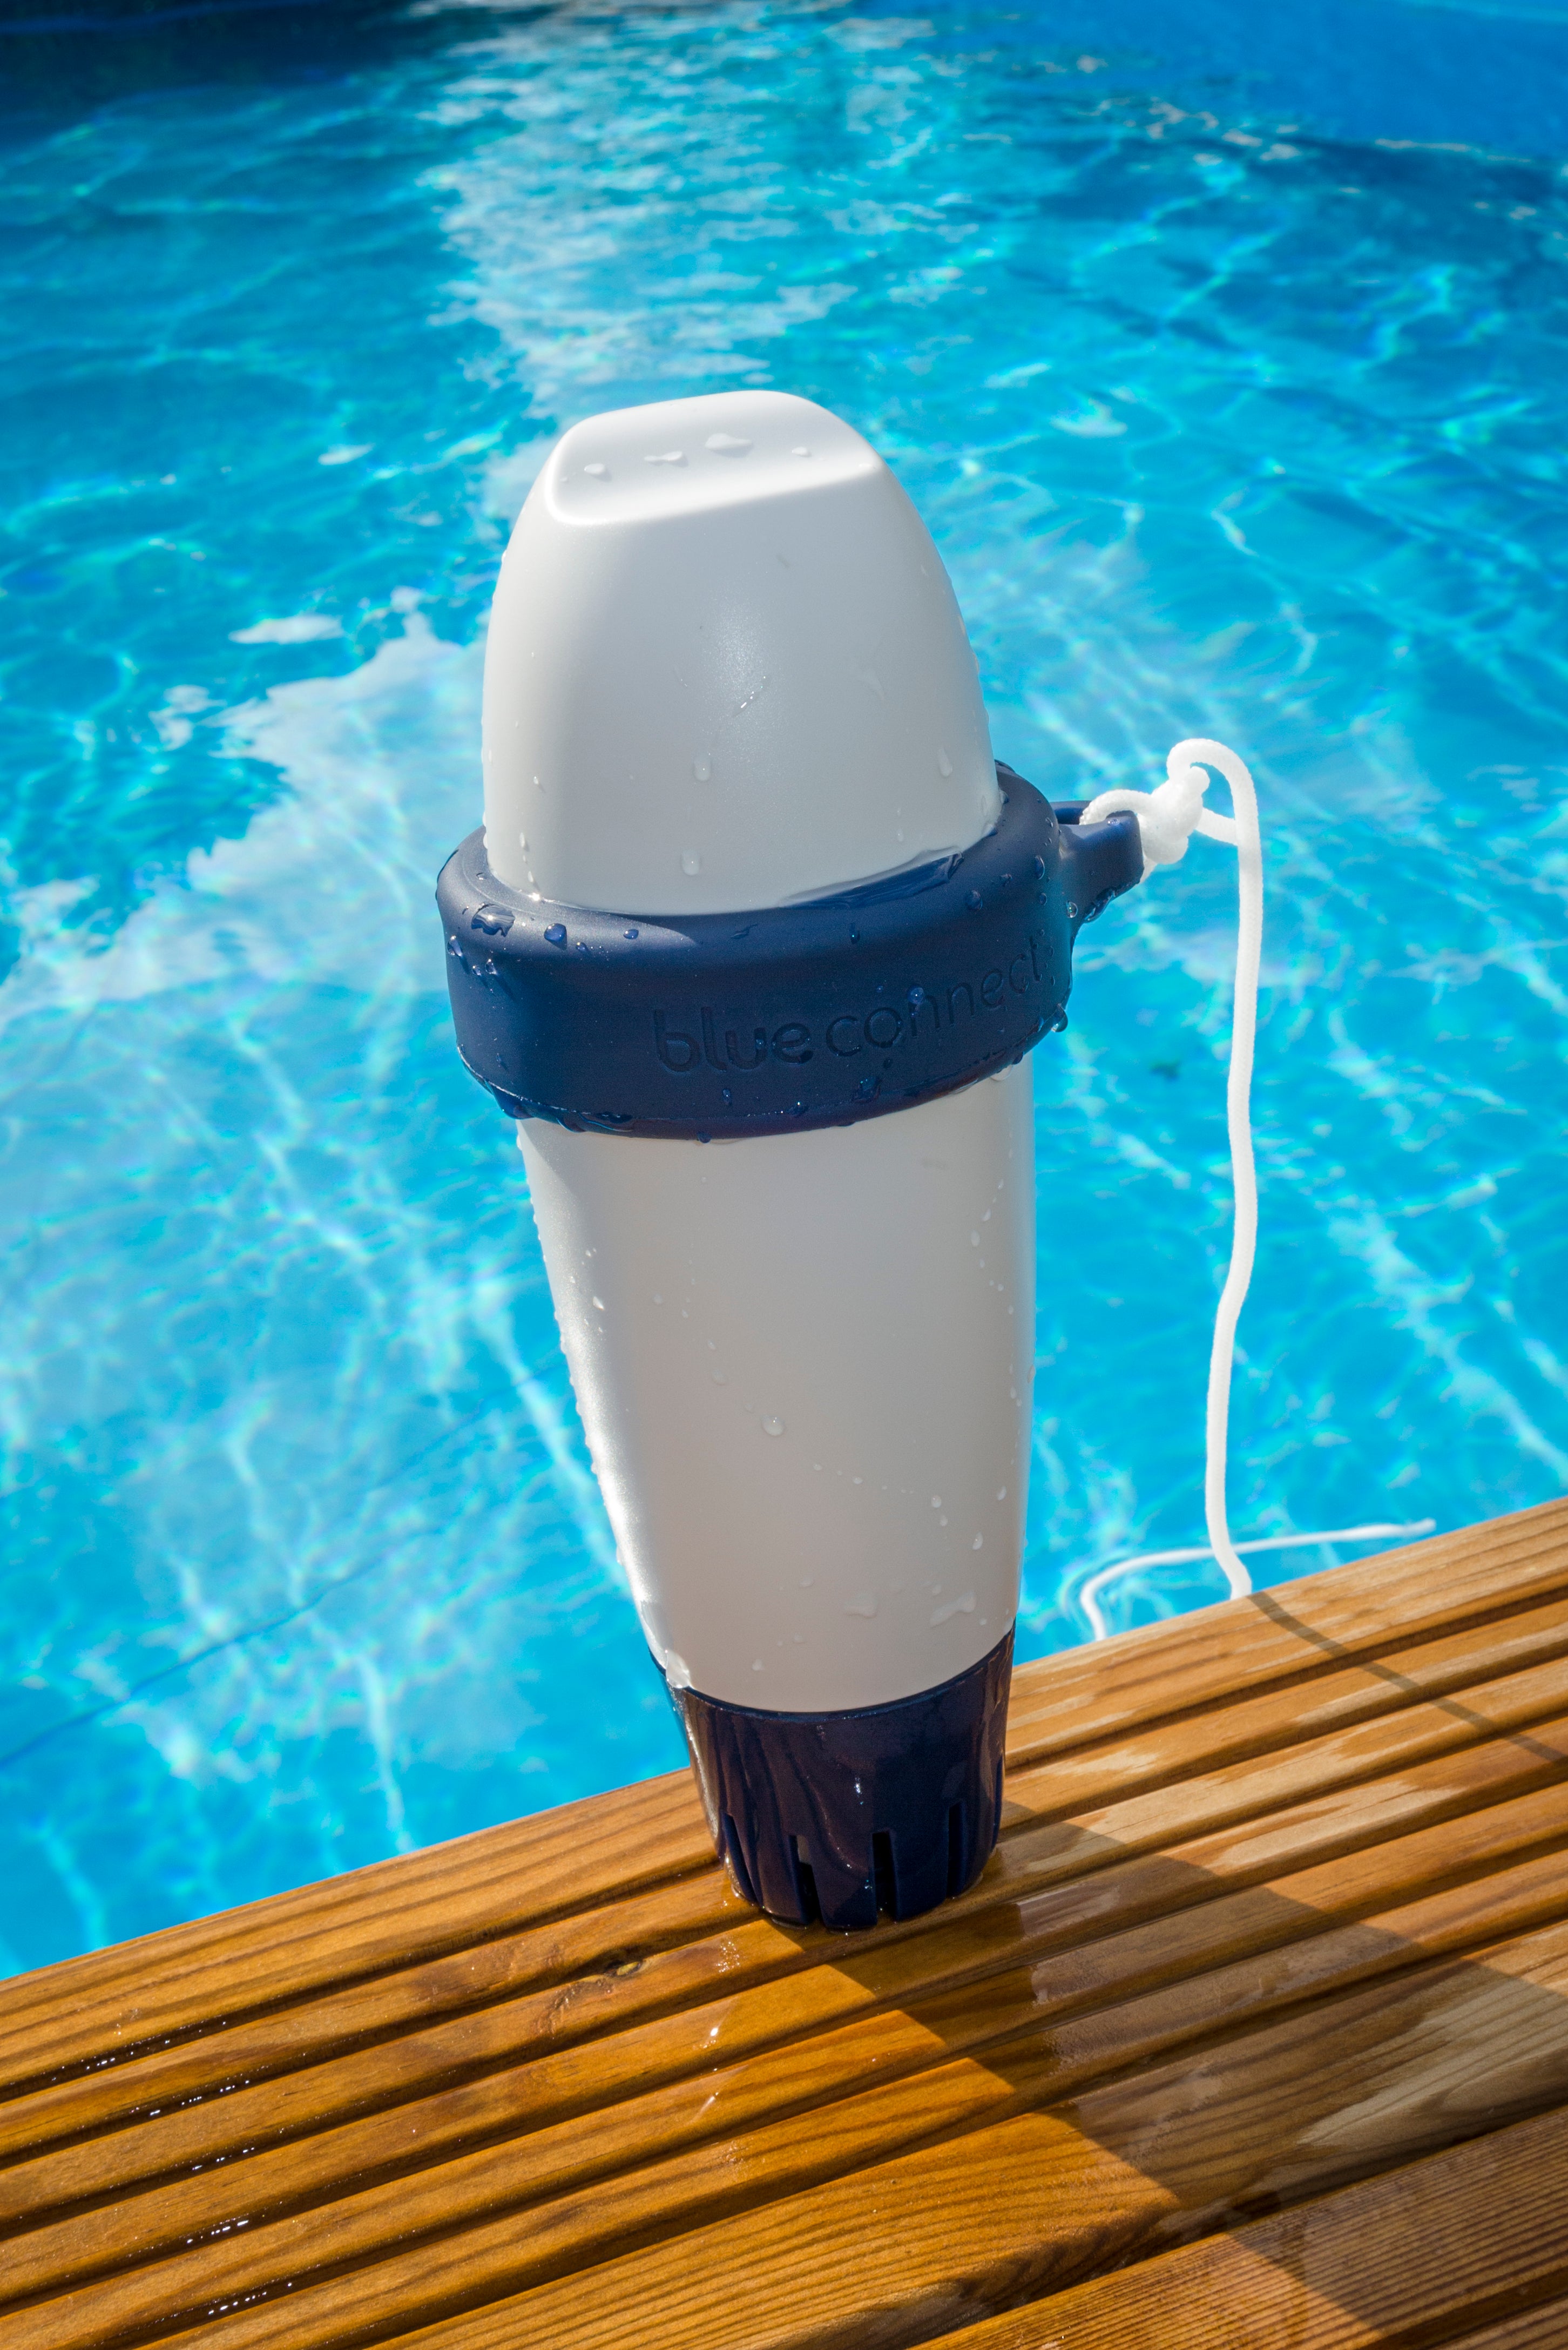 Analyseur piscine intelligent testeur d'eau connecté Blue Connect